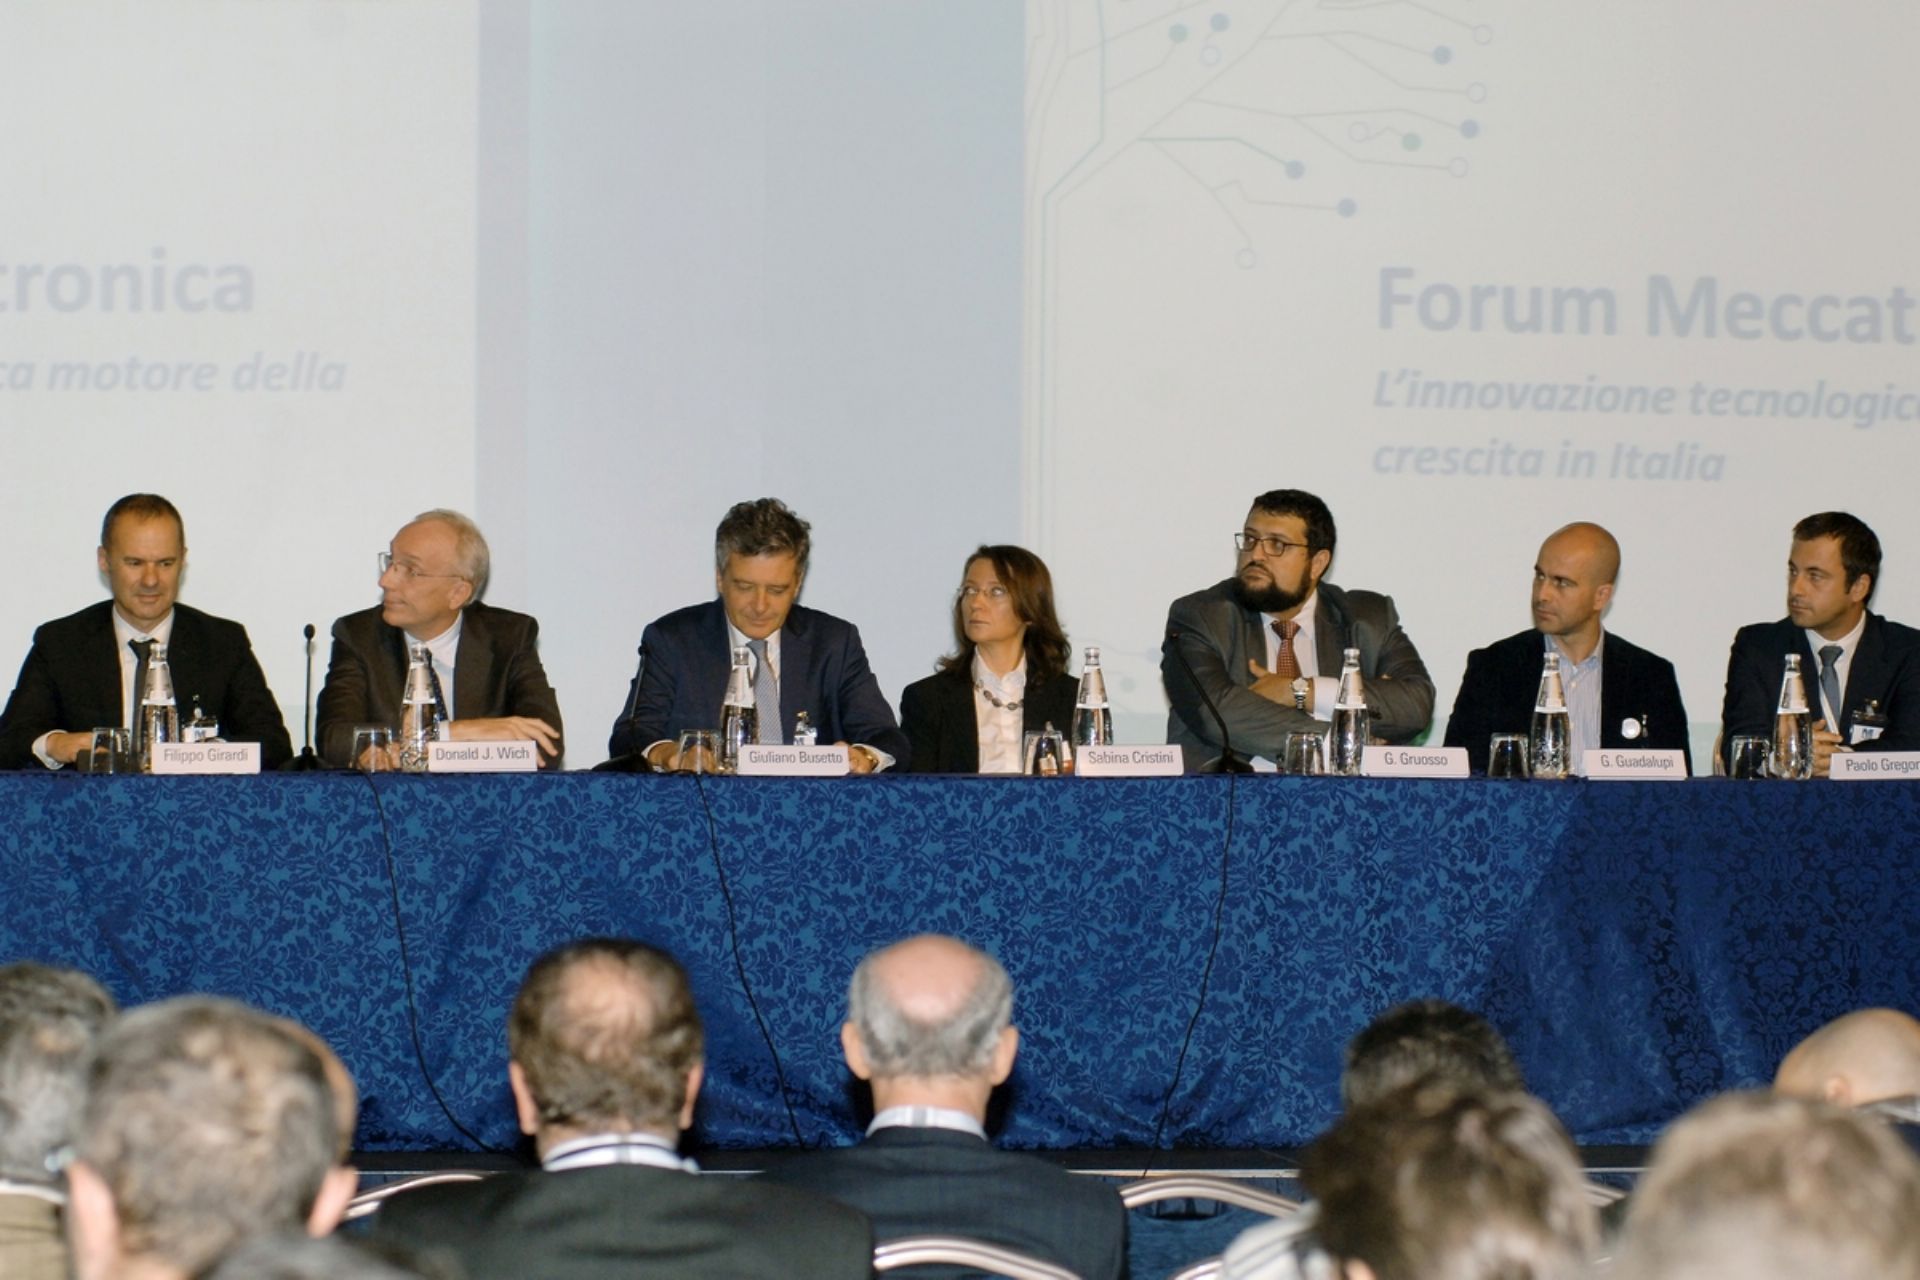 Forum Meccatronica, l’innovazione tecnologica motore della crescita in Italia